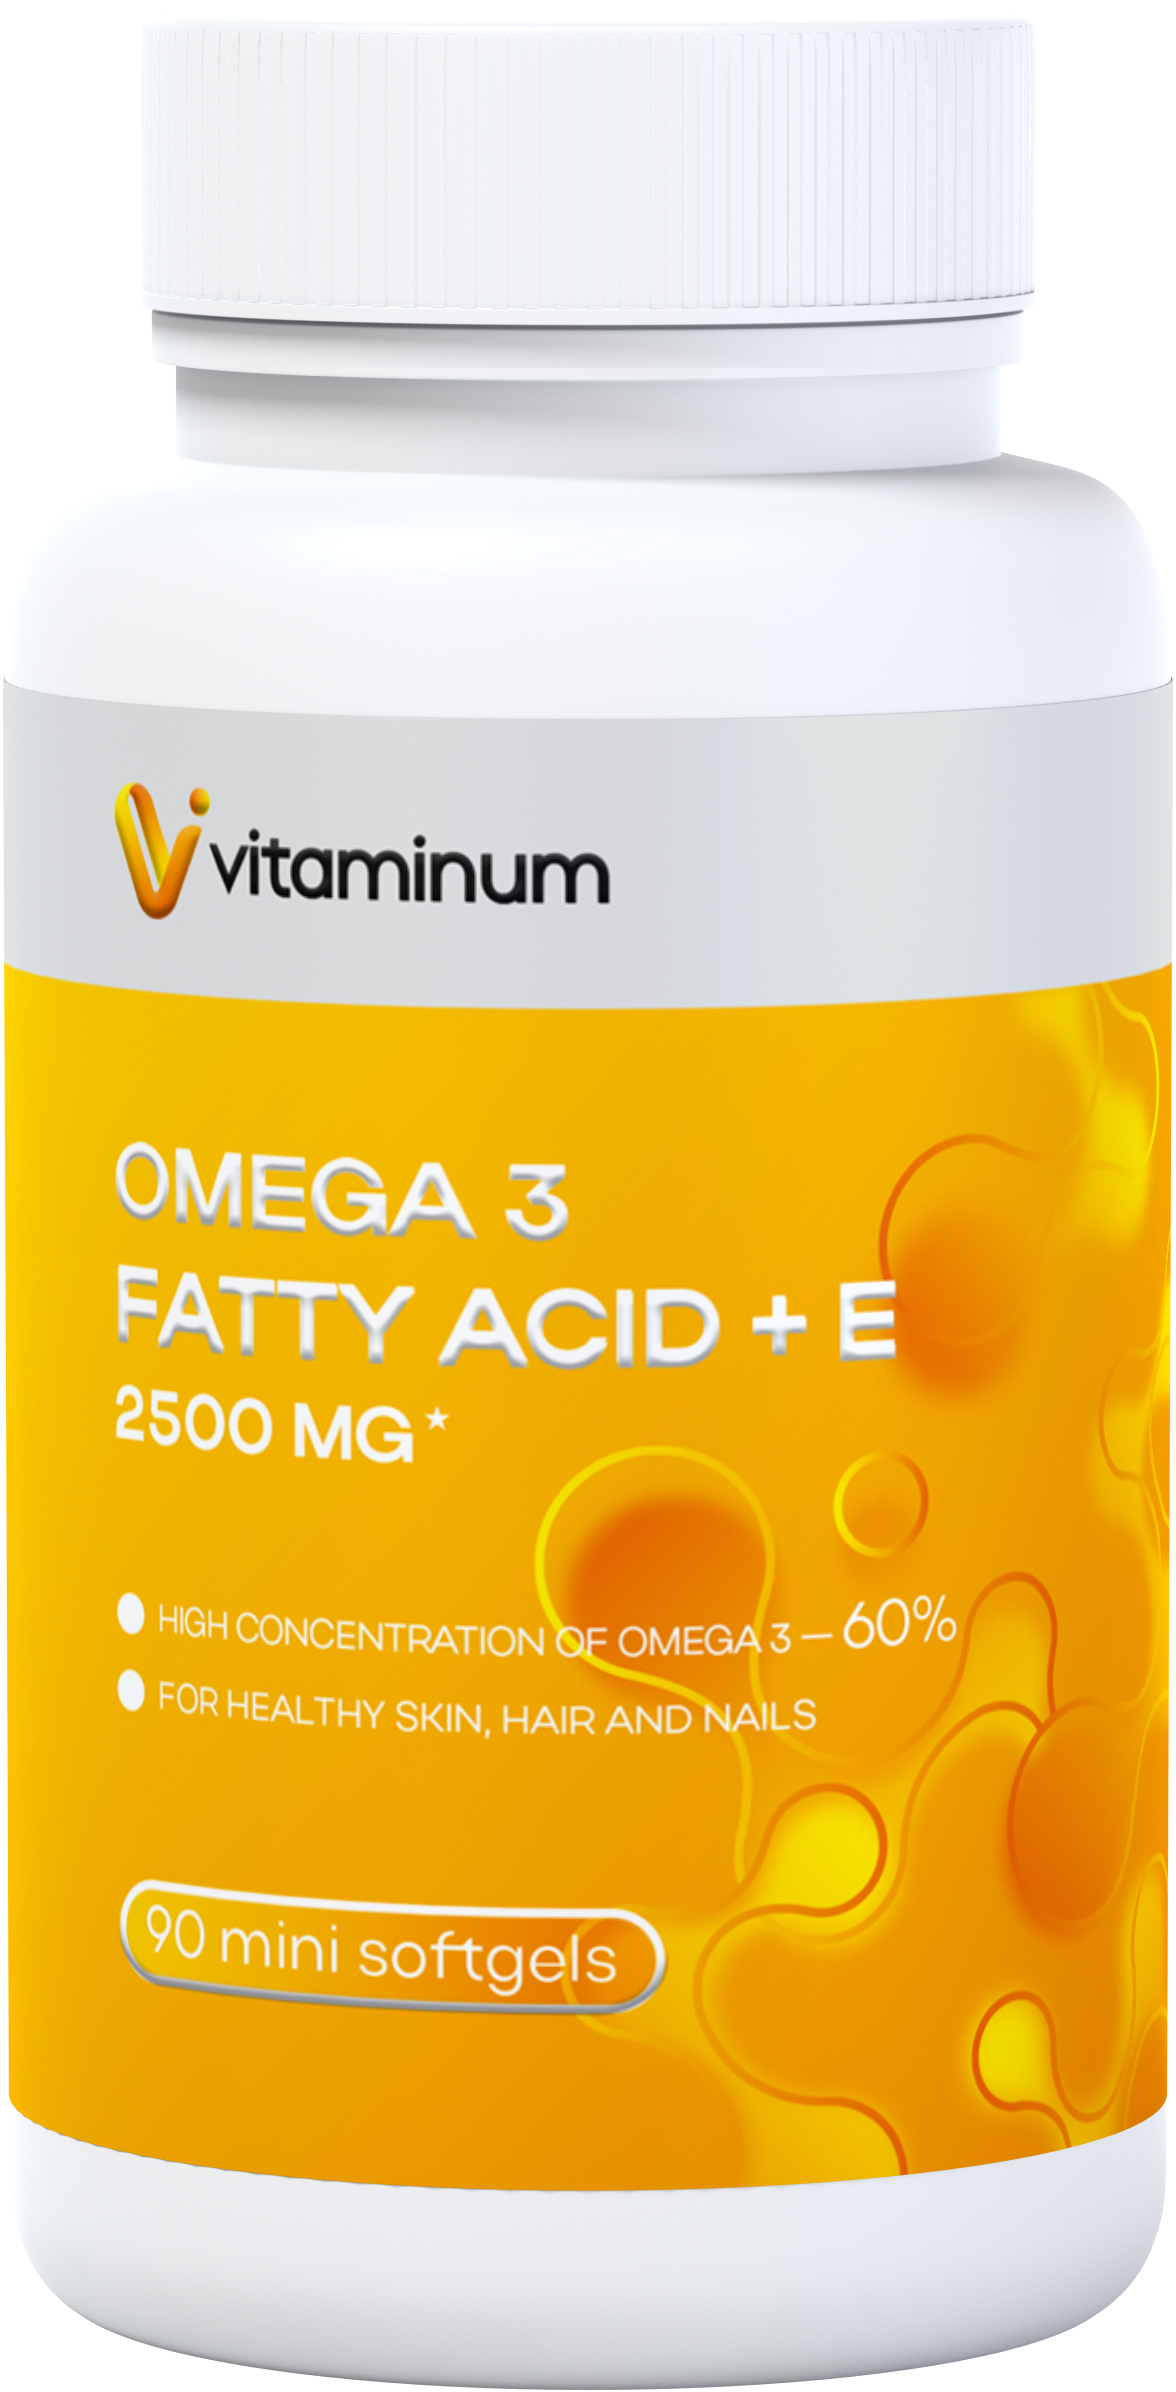  Vitaminum ОМЕГА 3 60% + витамин Е (2500 MG*) 90 капсул 700 мг   в Рубцовске